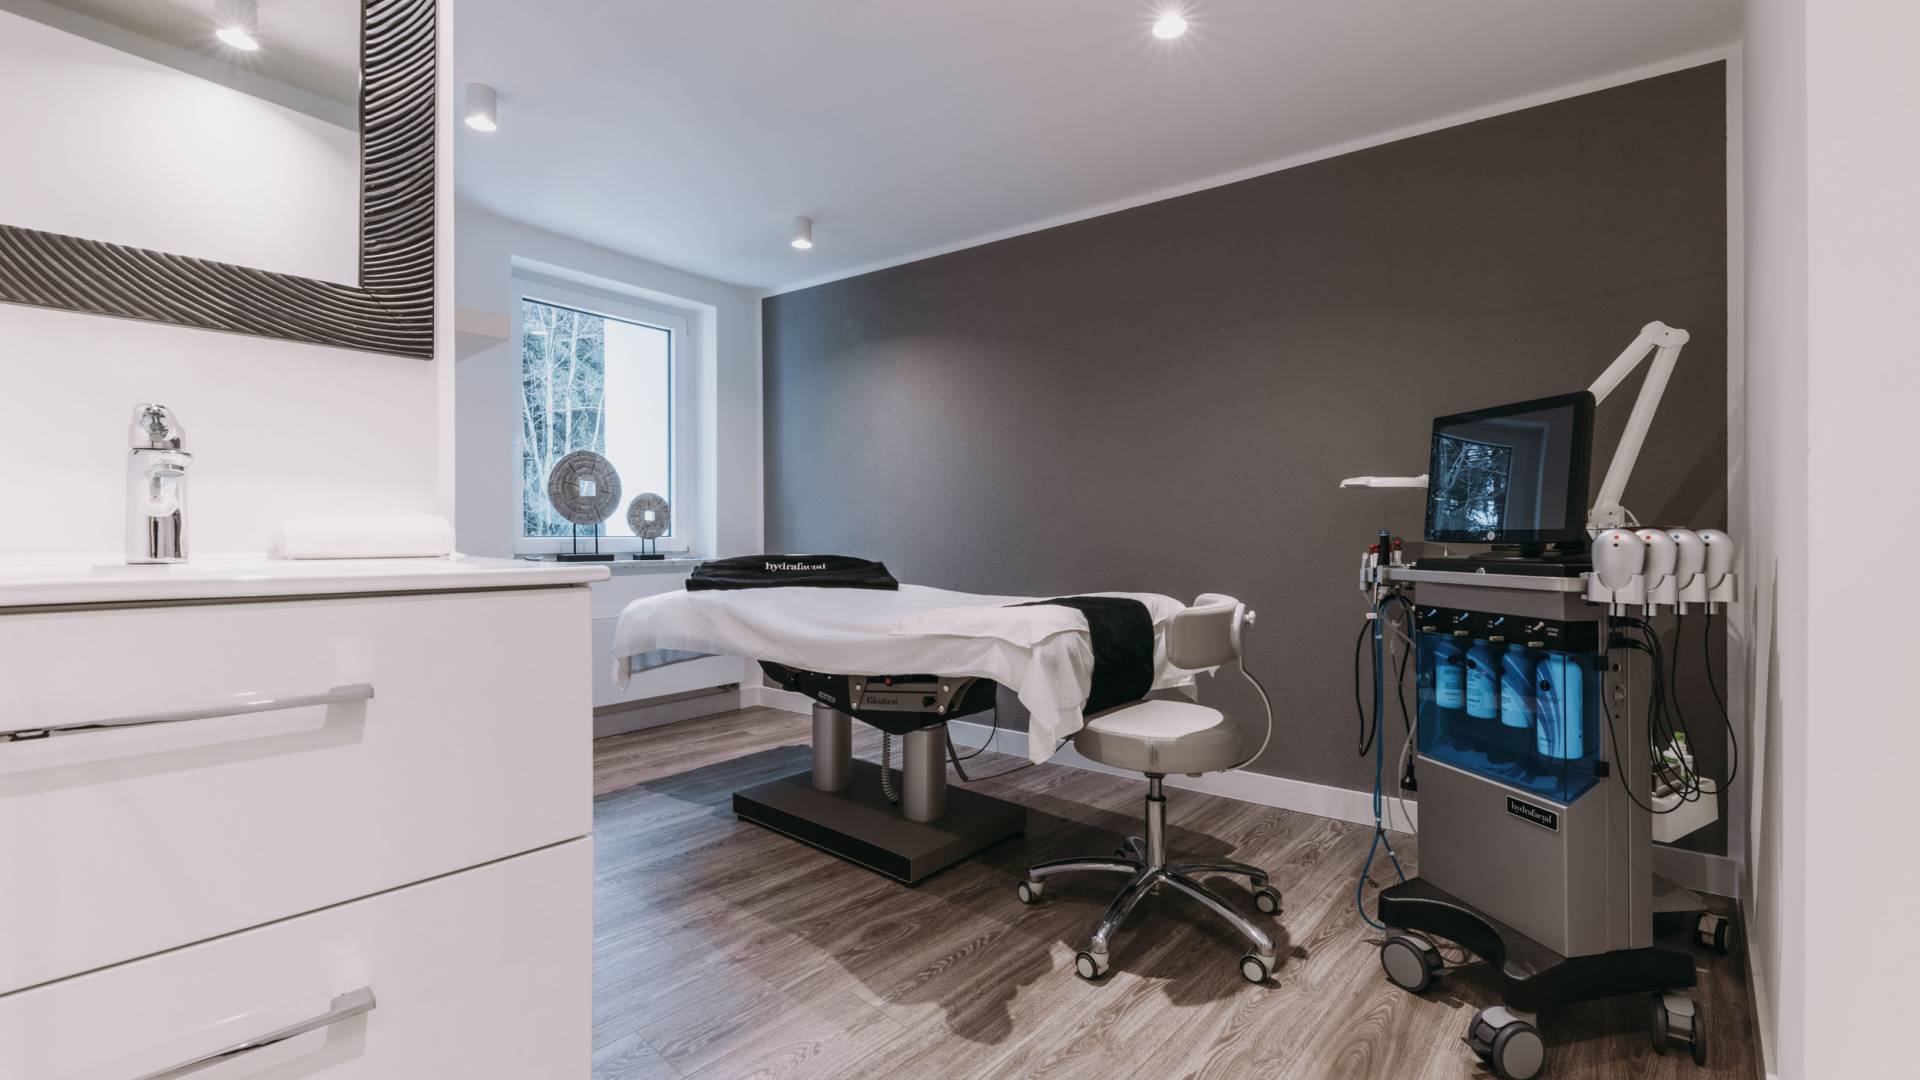 Ein modern eingerichteter Praxisraum mit medizinischem Gerät und einer elektronischen Behandlungsliege.